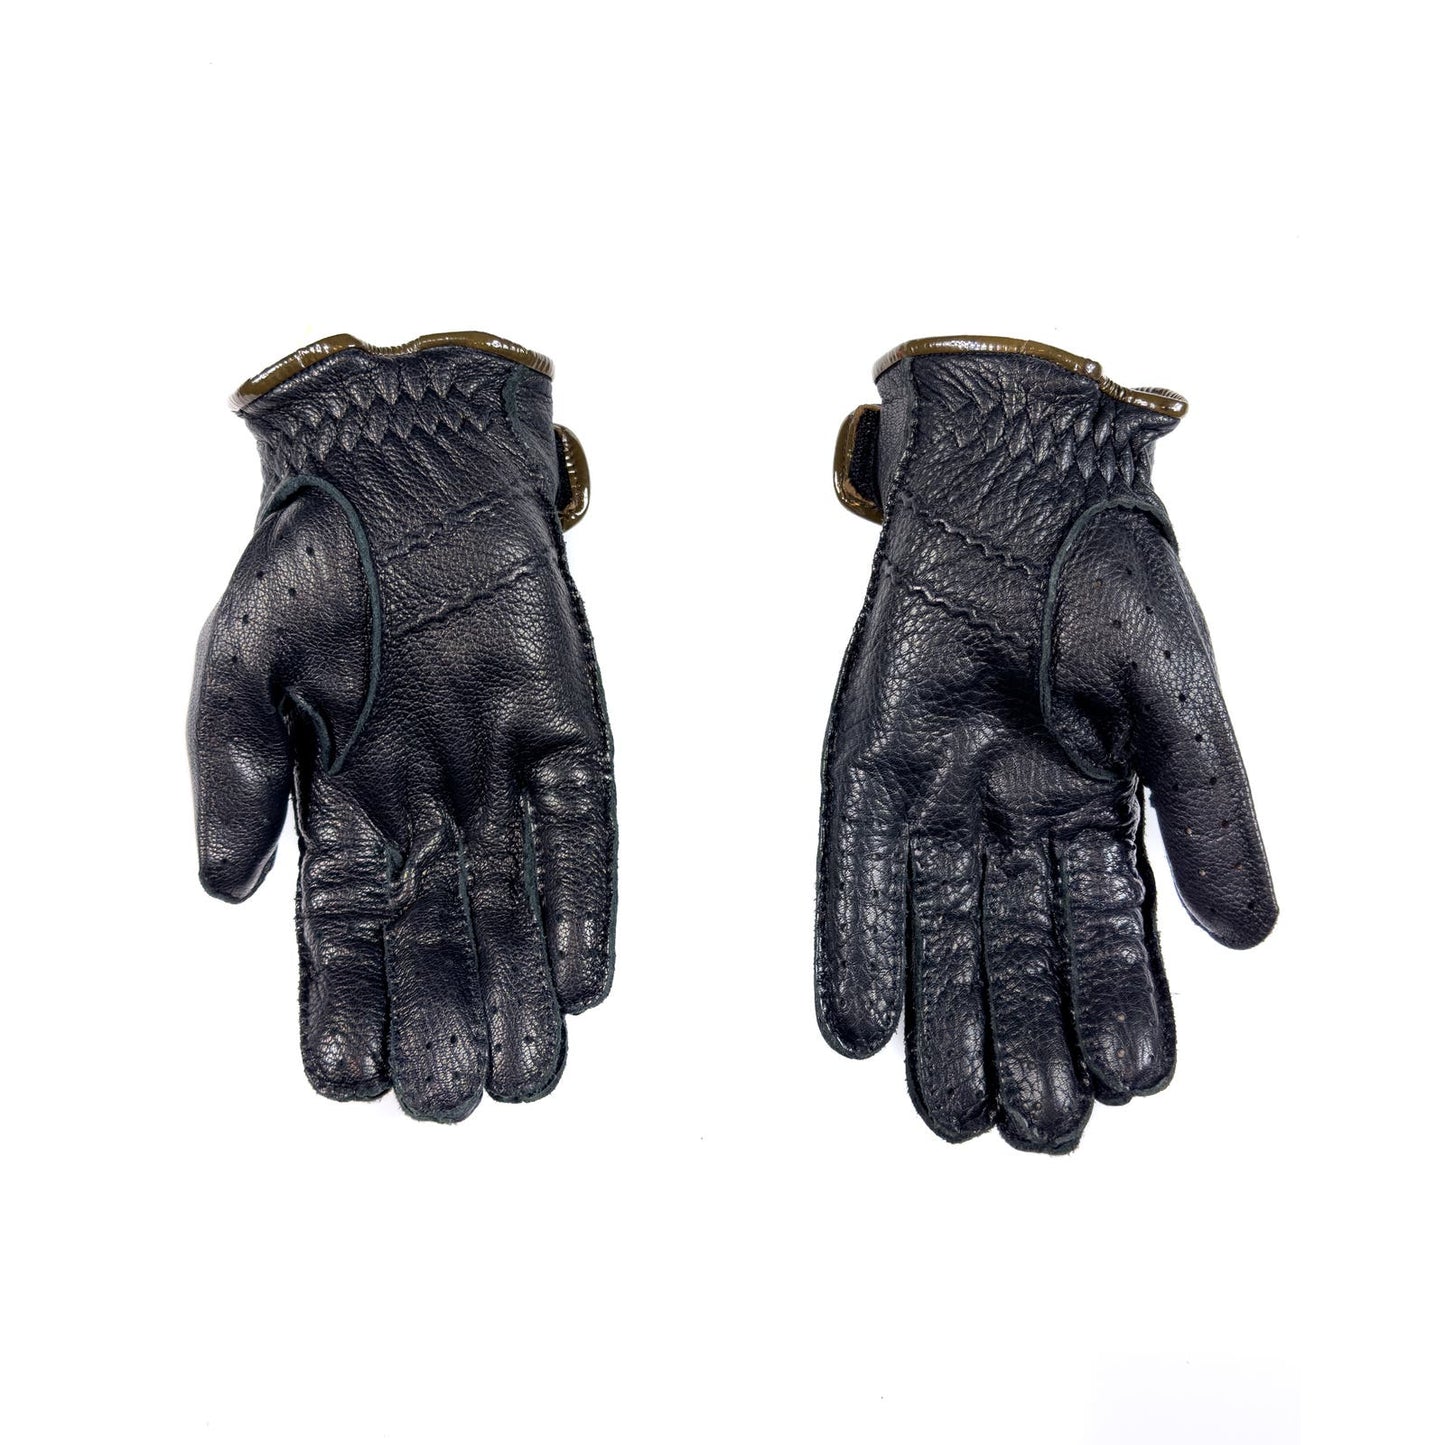 Leather Biker Gloves